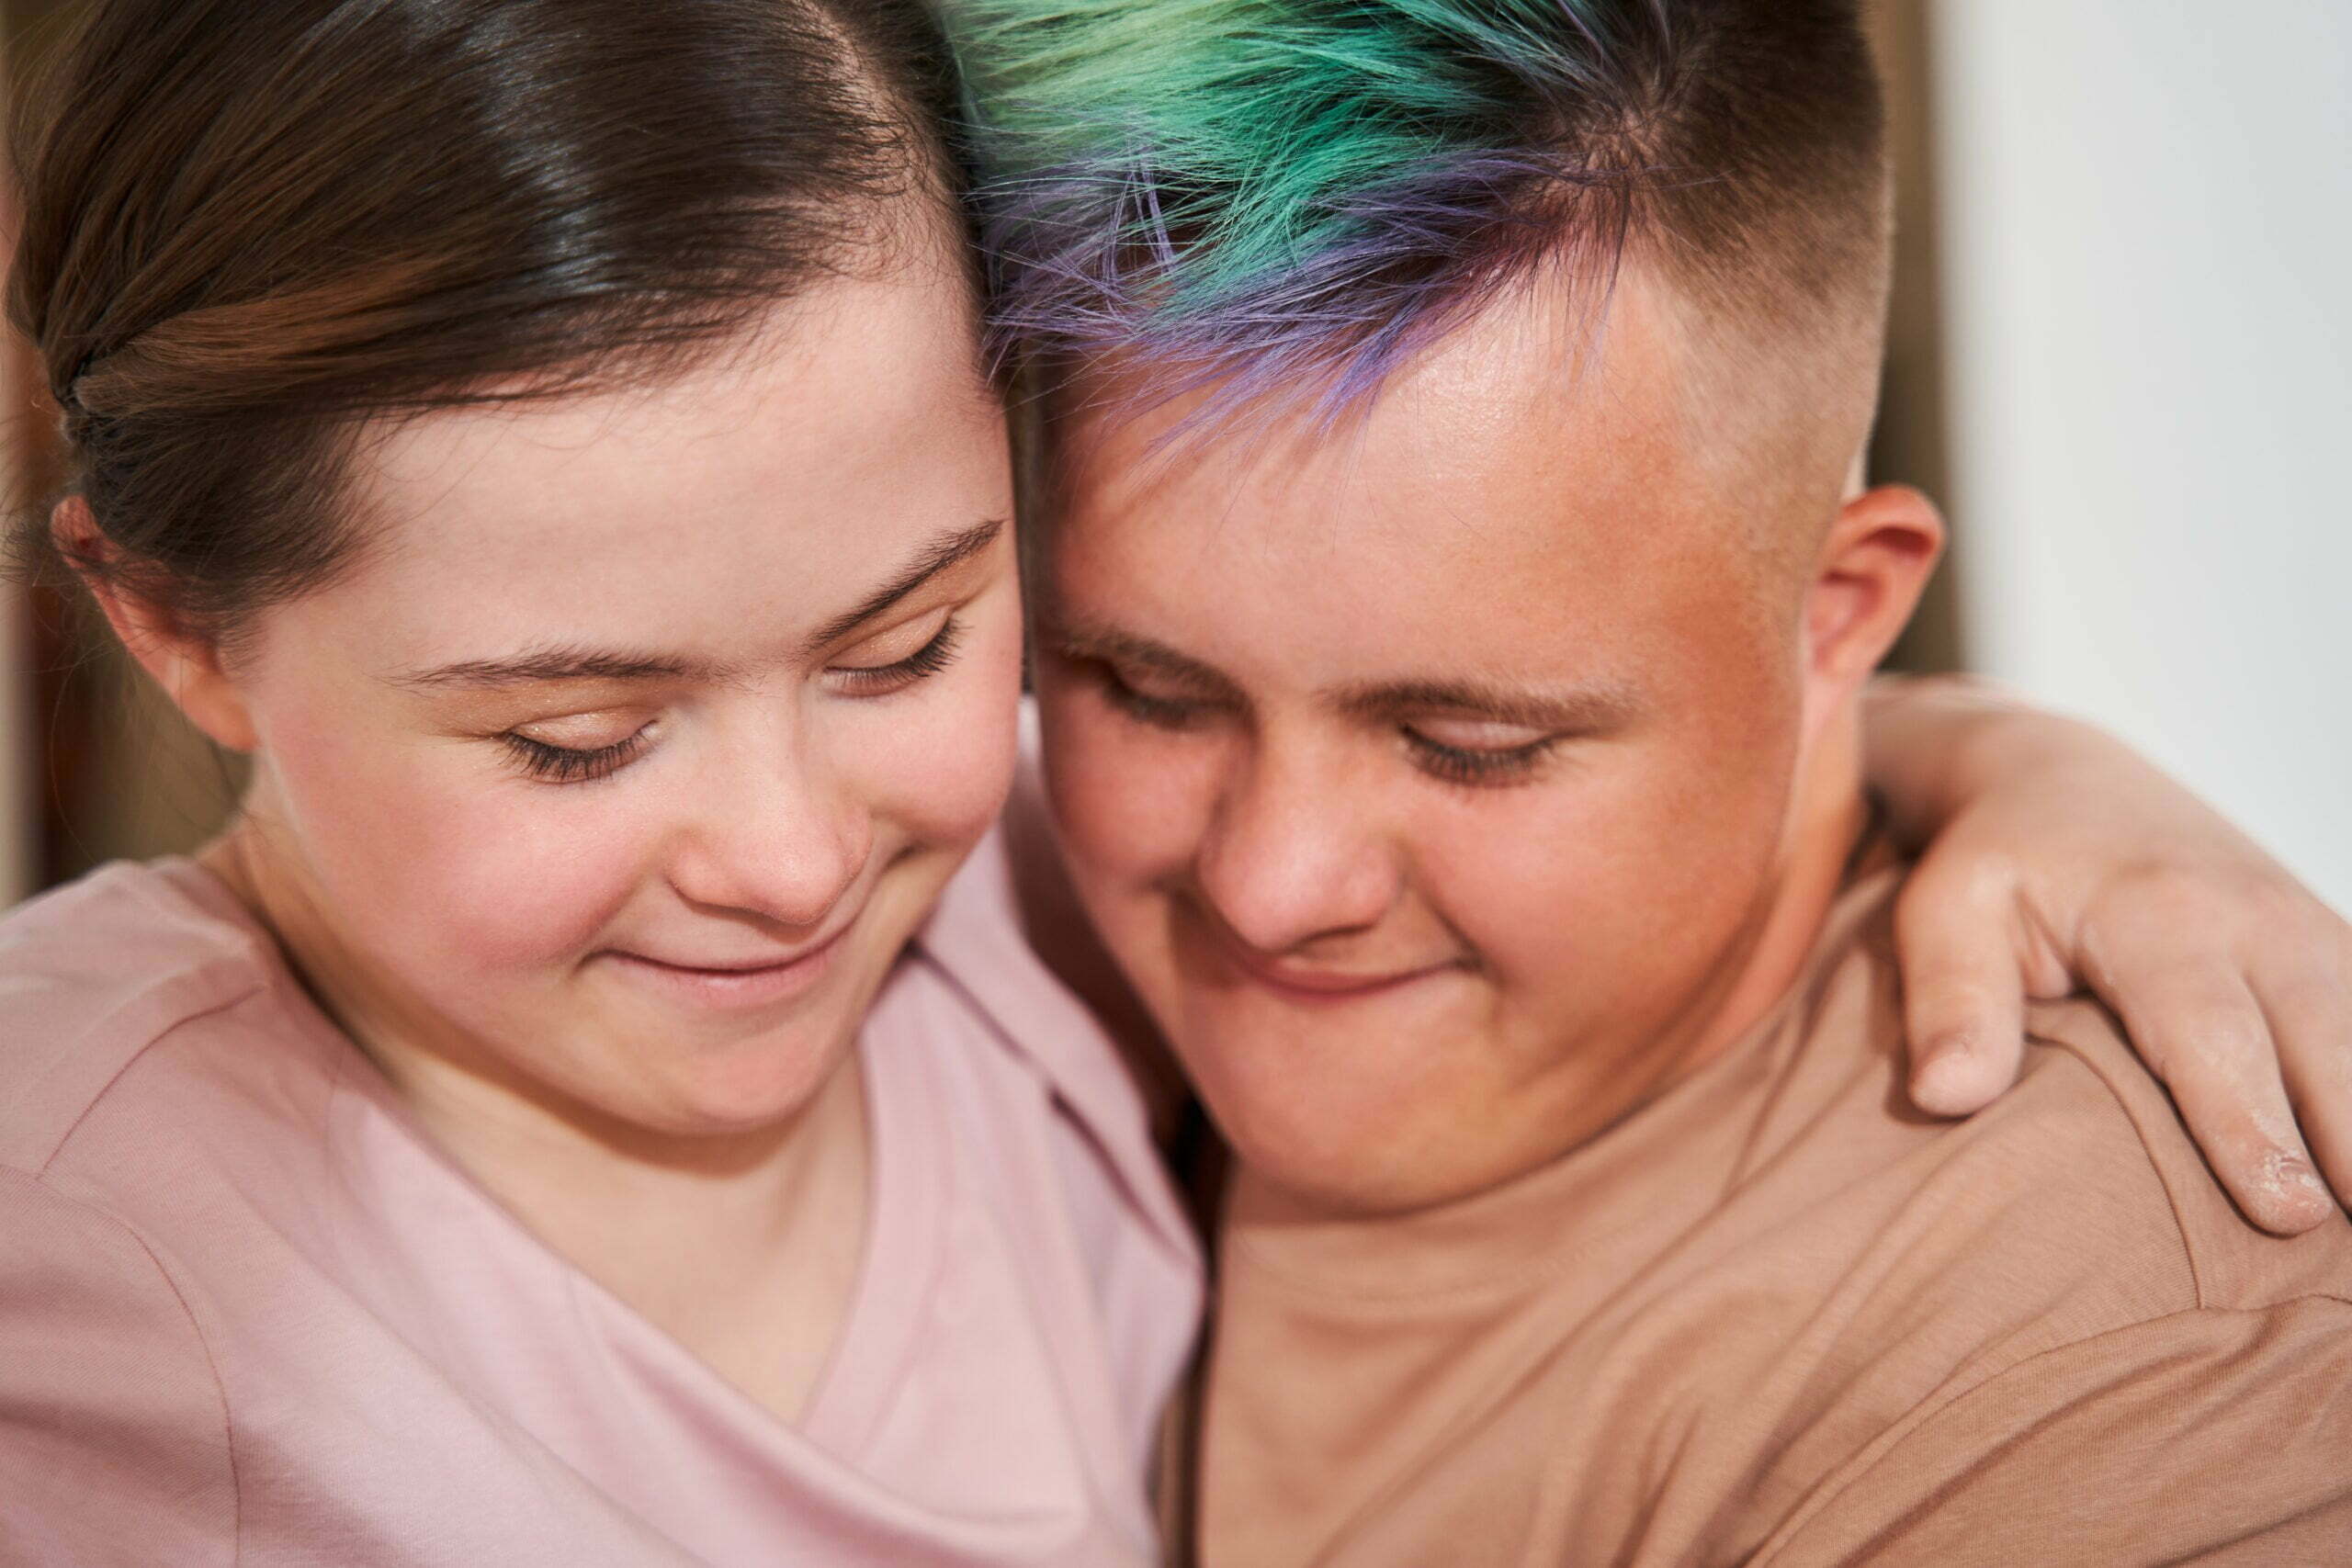 Memantina e síndrome de Down: na foto, dois jovens brancos com síndrome de Down se abraçam e olham para baixo